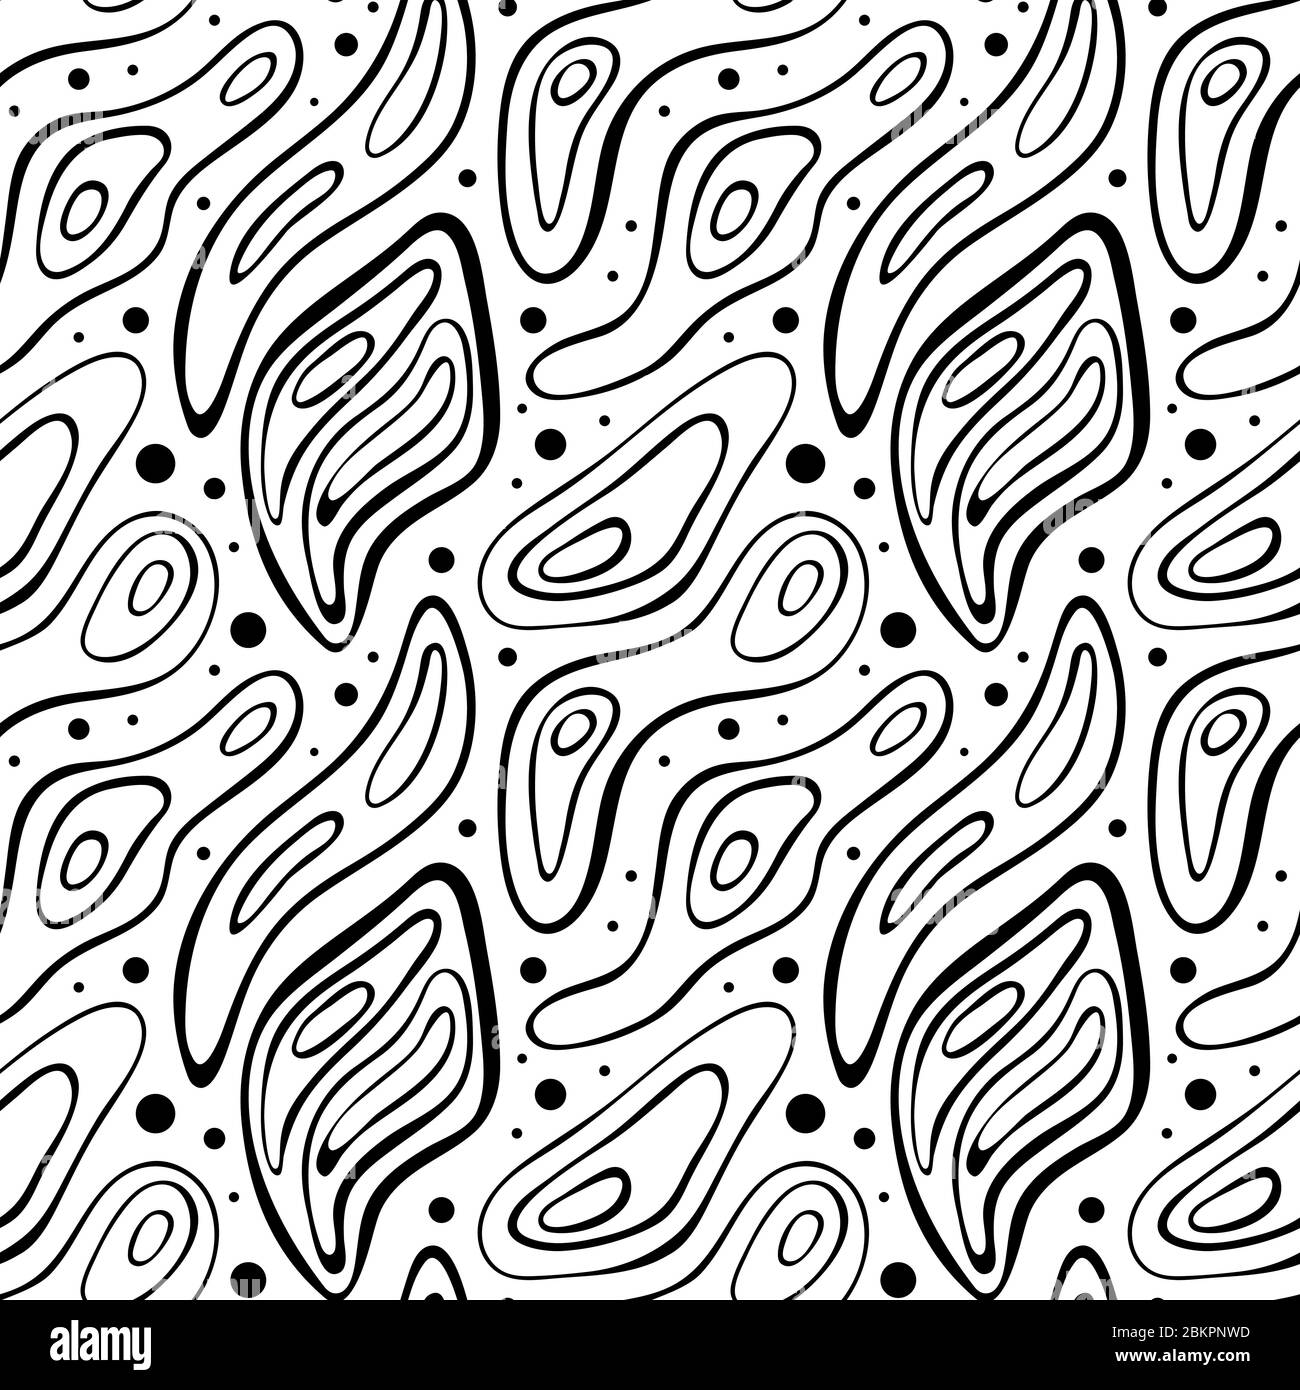 Abstraktes nahtloses Muster mit Tropfen, Wellen und Punkten. Monochromer Hintergrund. Vektorgrafik. Stock Vektor